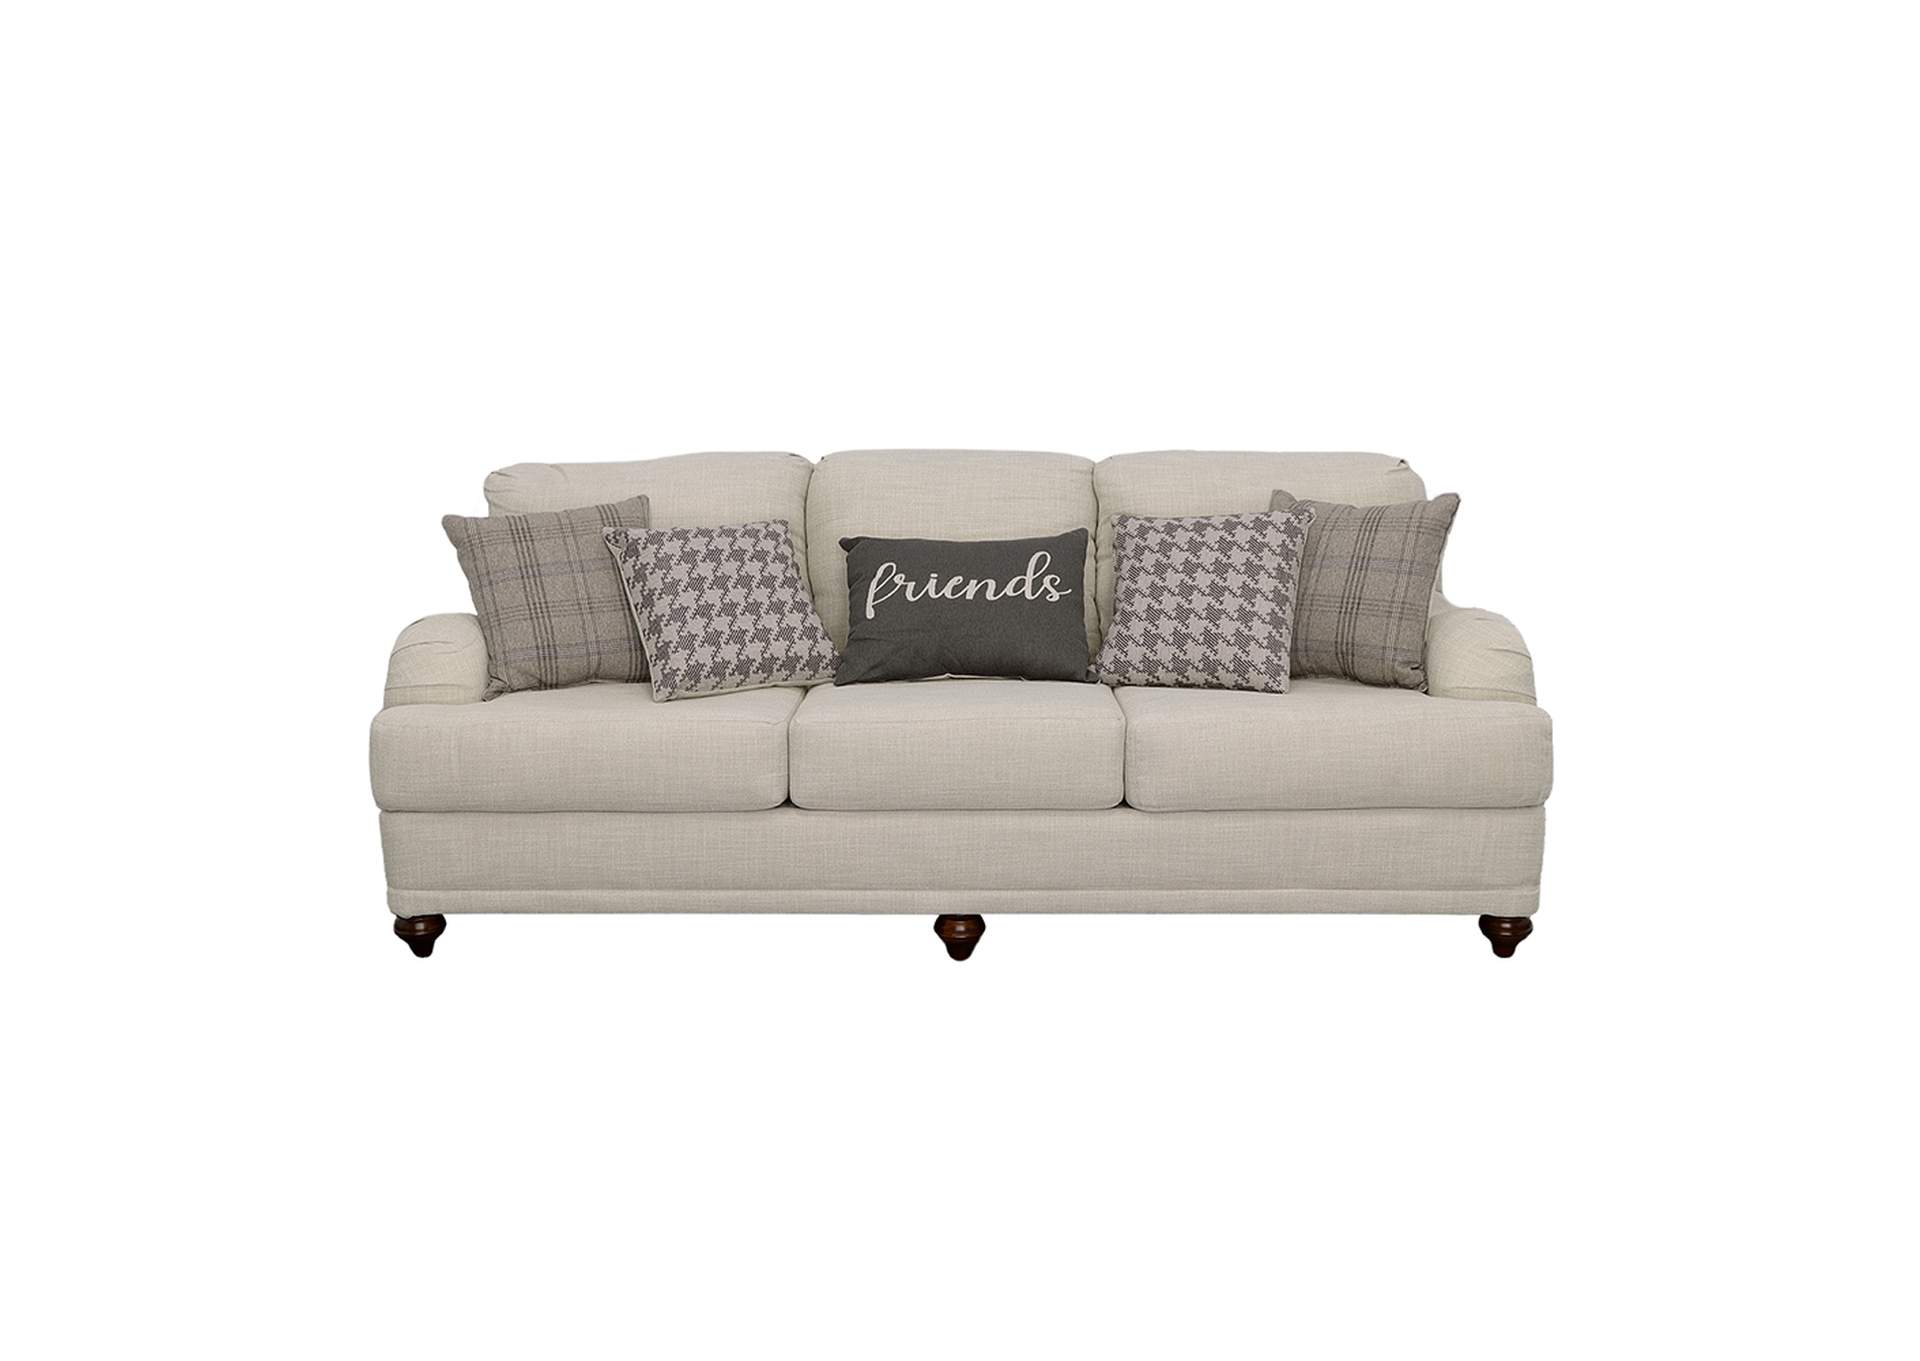 Glenn Cushion Back Sofa Light Grey,Coaster Furniture